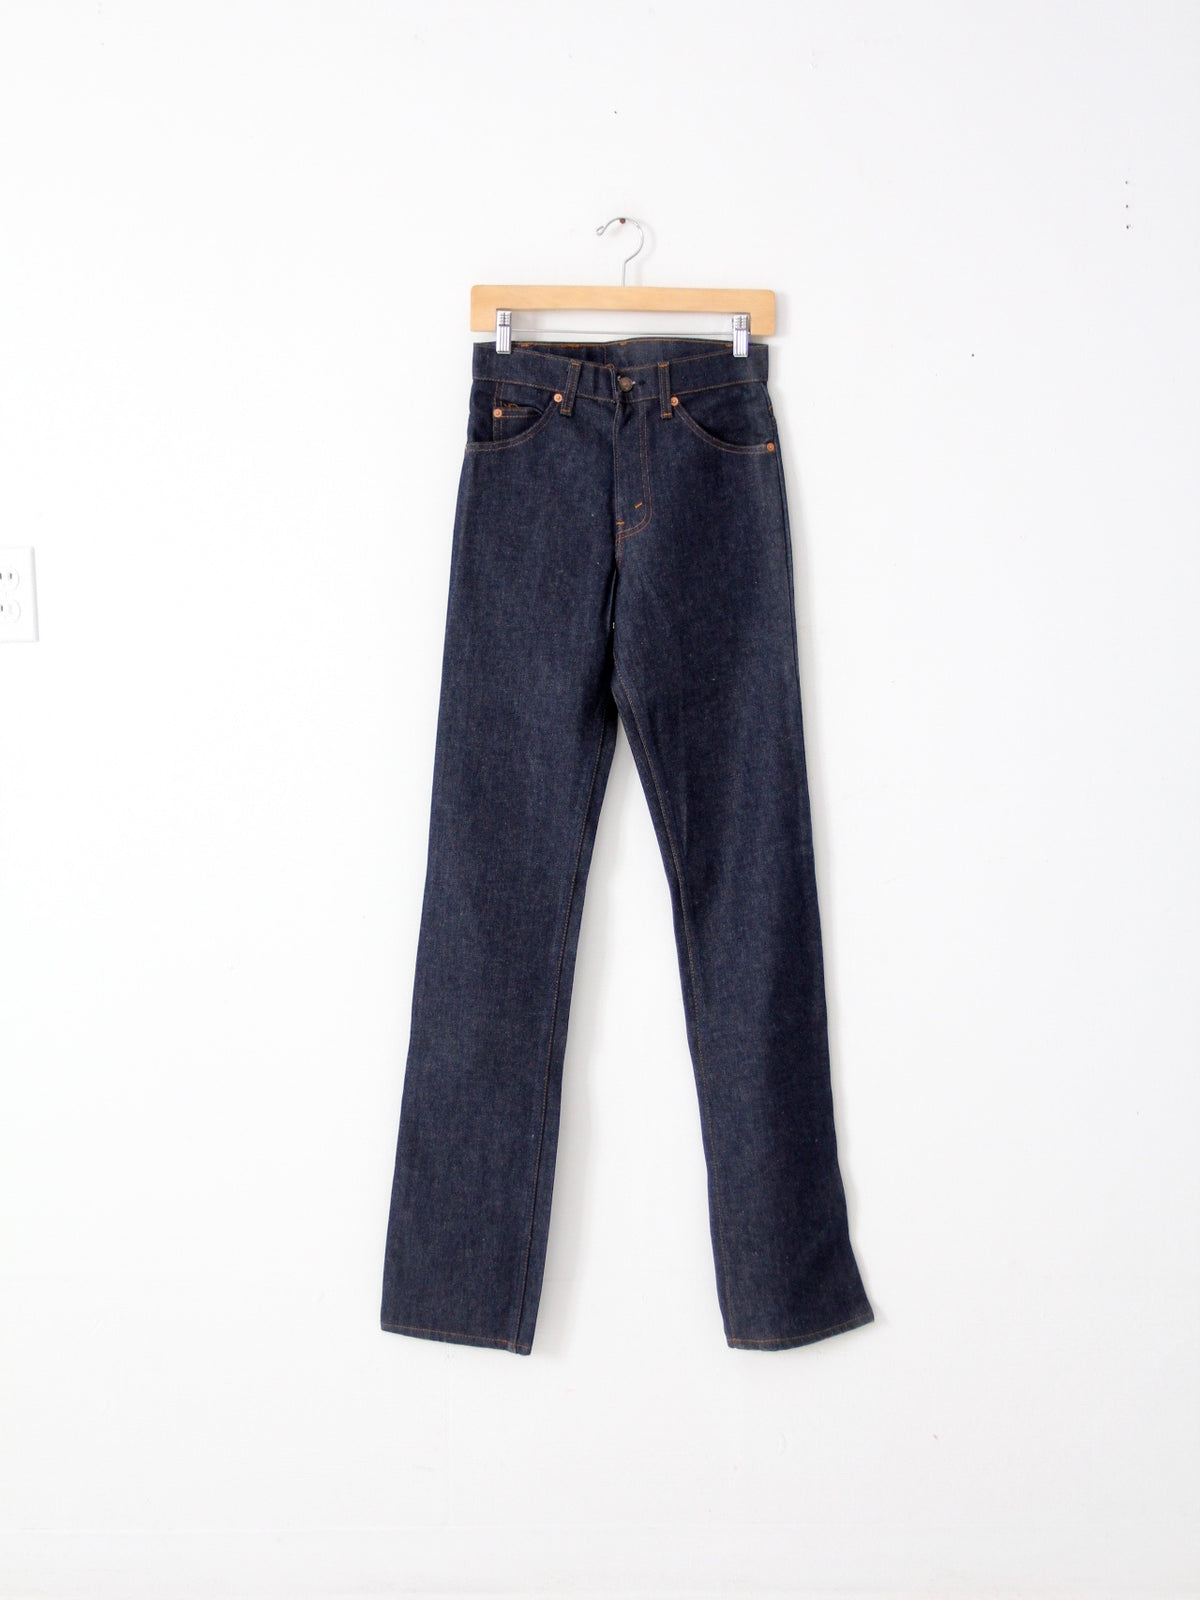 vintage Levis 509 jeans, 28 x 36